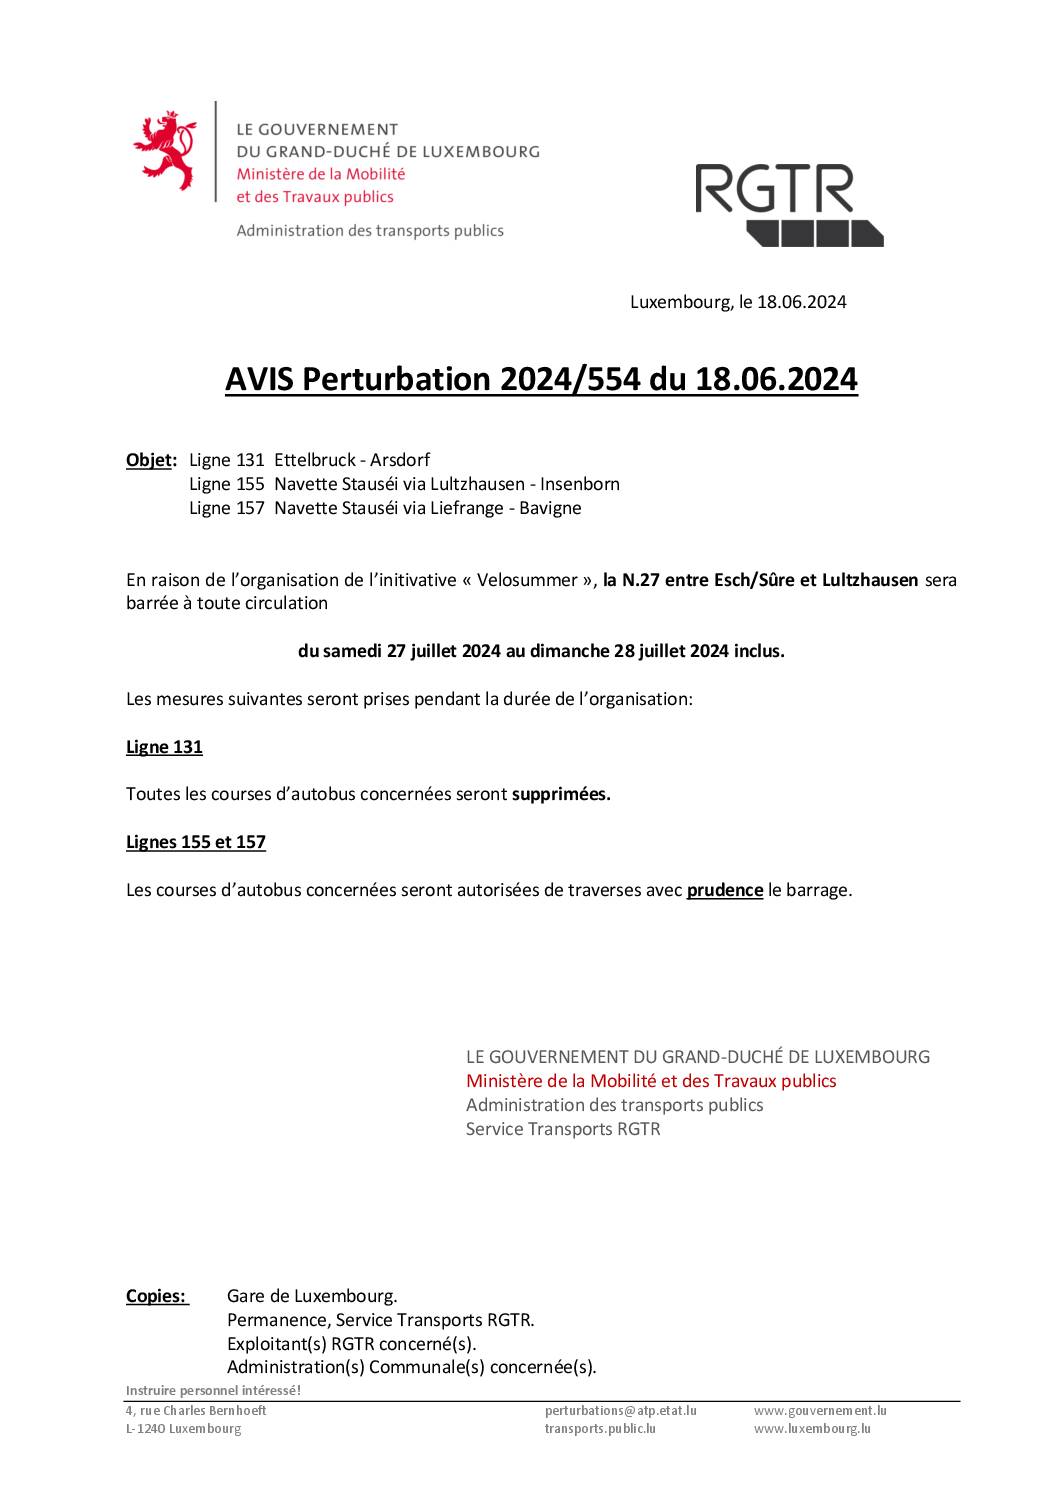 Avis perturbation_Ligne131, 155 et 157_Velosummer Esch-sur-Sûre - Lultzhausen